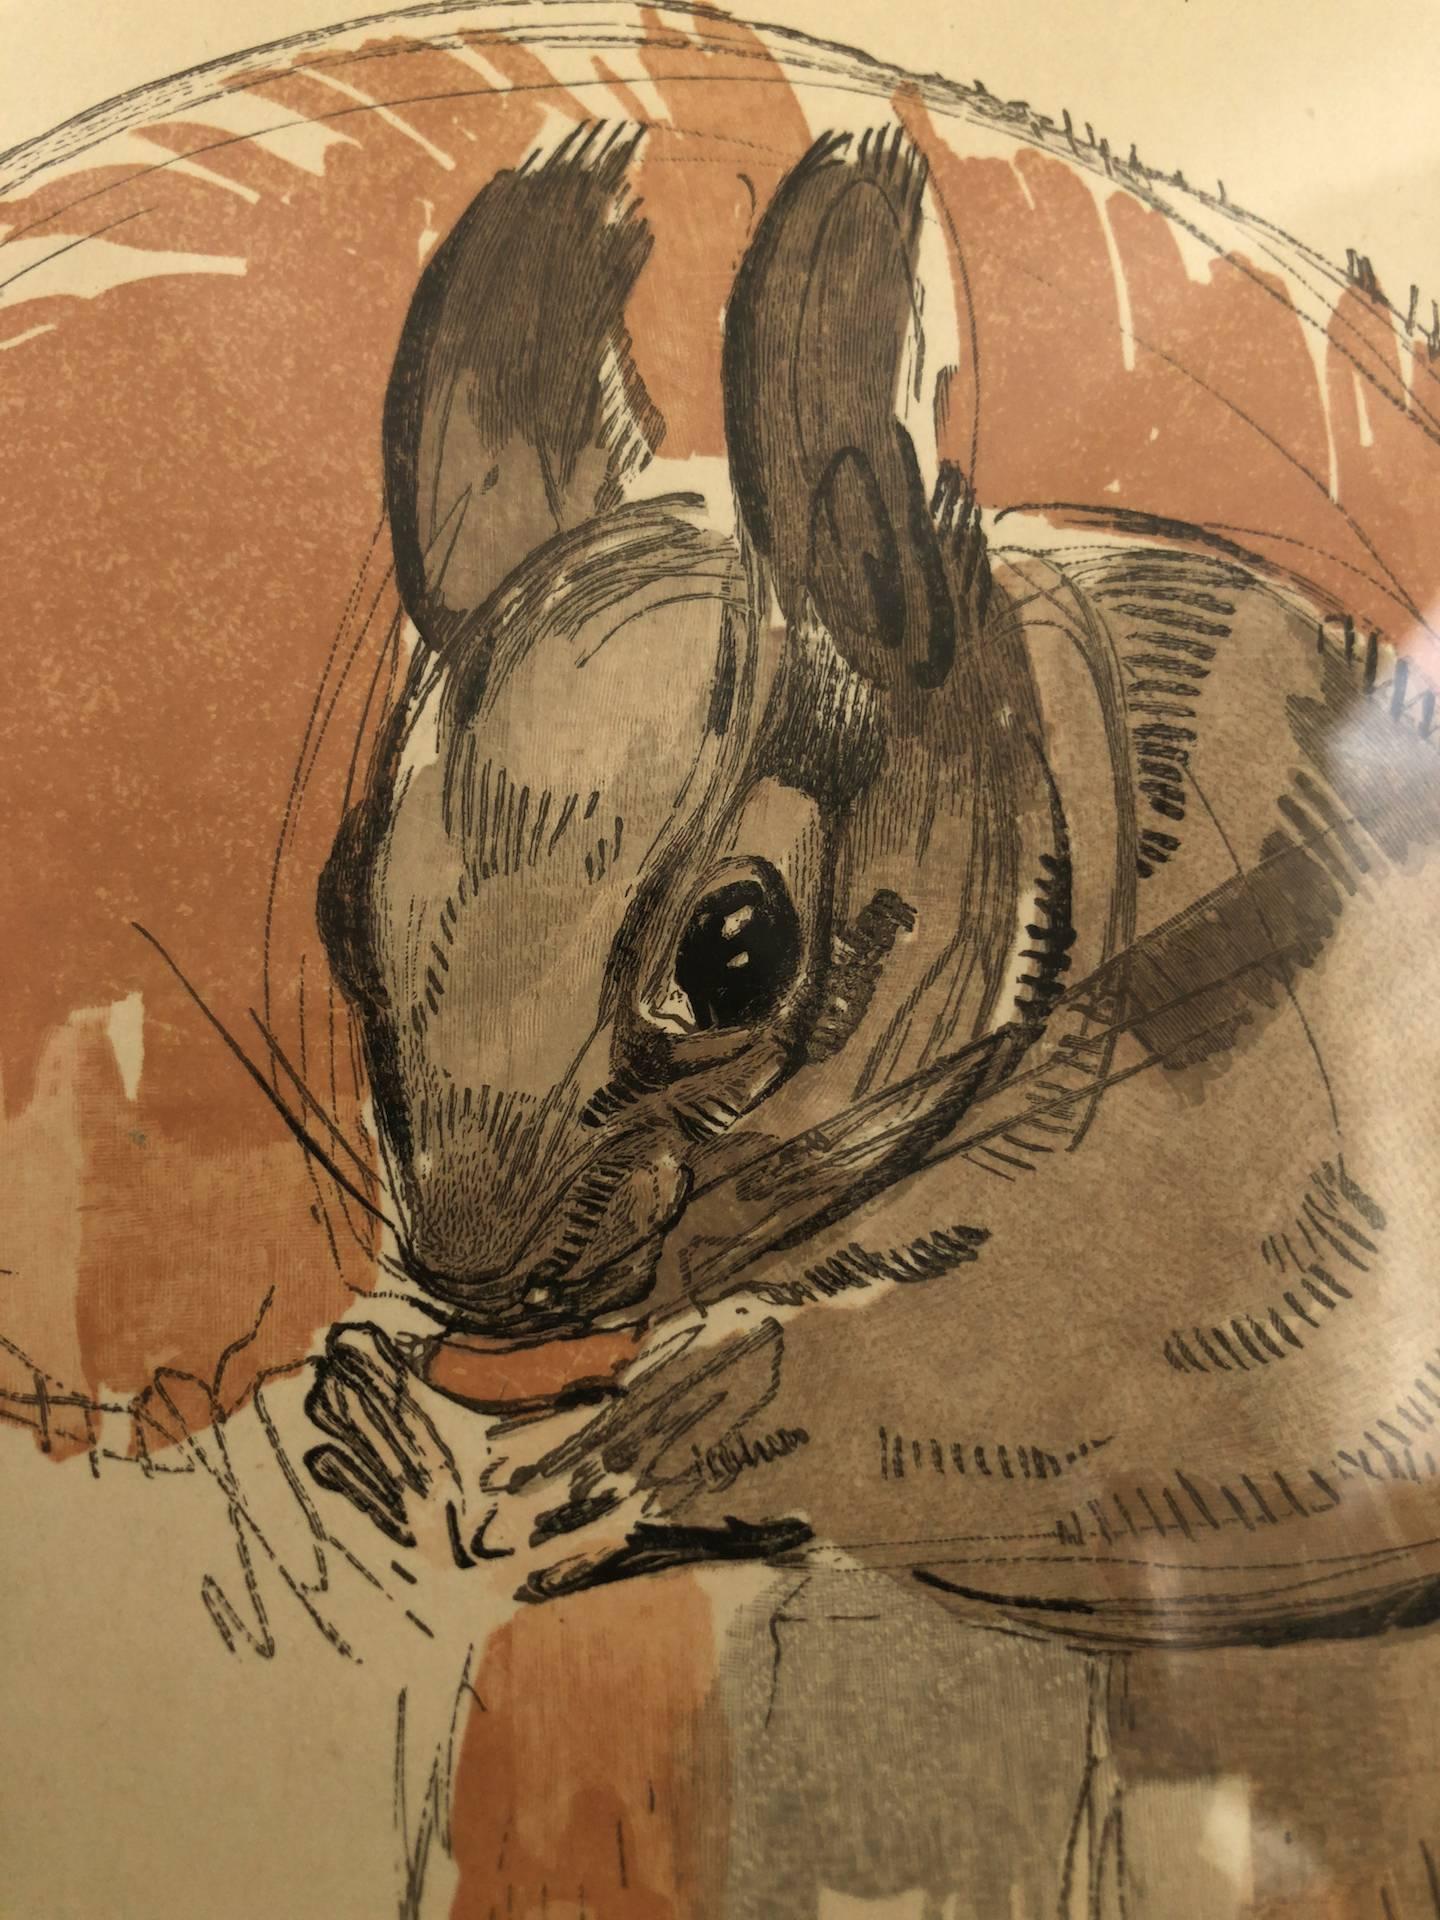 L’écureuil, Squirrel, Lithograph by Paul Jouve, France 1932 (Art déco)